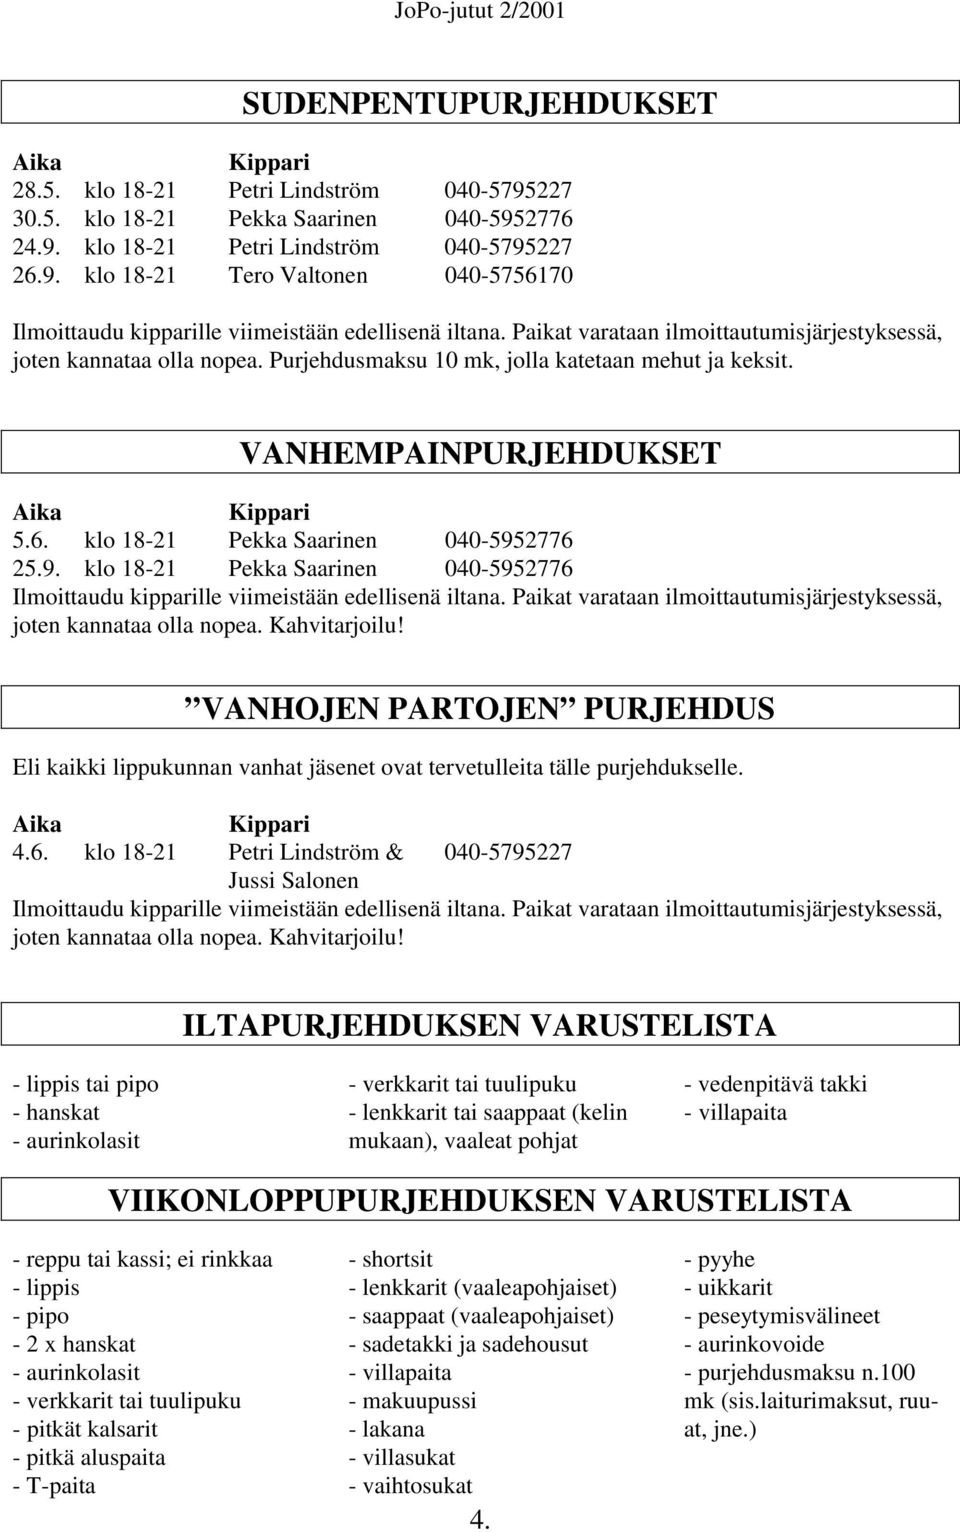 klo 18-21 Pekka Saarinen 040-5952776 25.9. klo 18-21 Pekka Saarinen 040-5952776 Ilmoittaudu kipparille viimeistään edellisenä iltana.